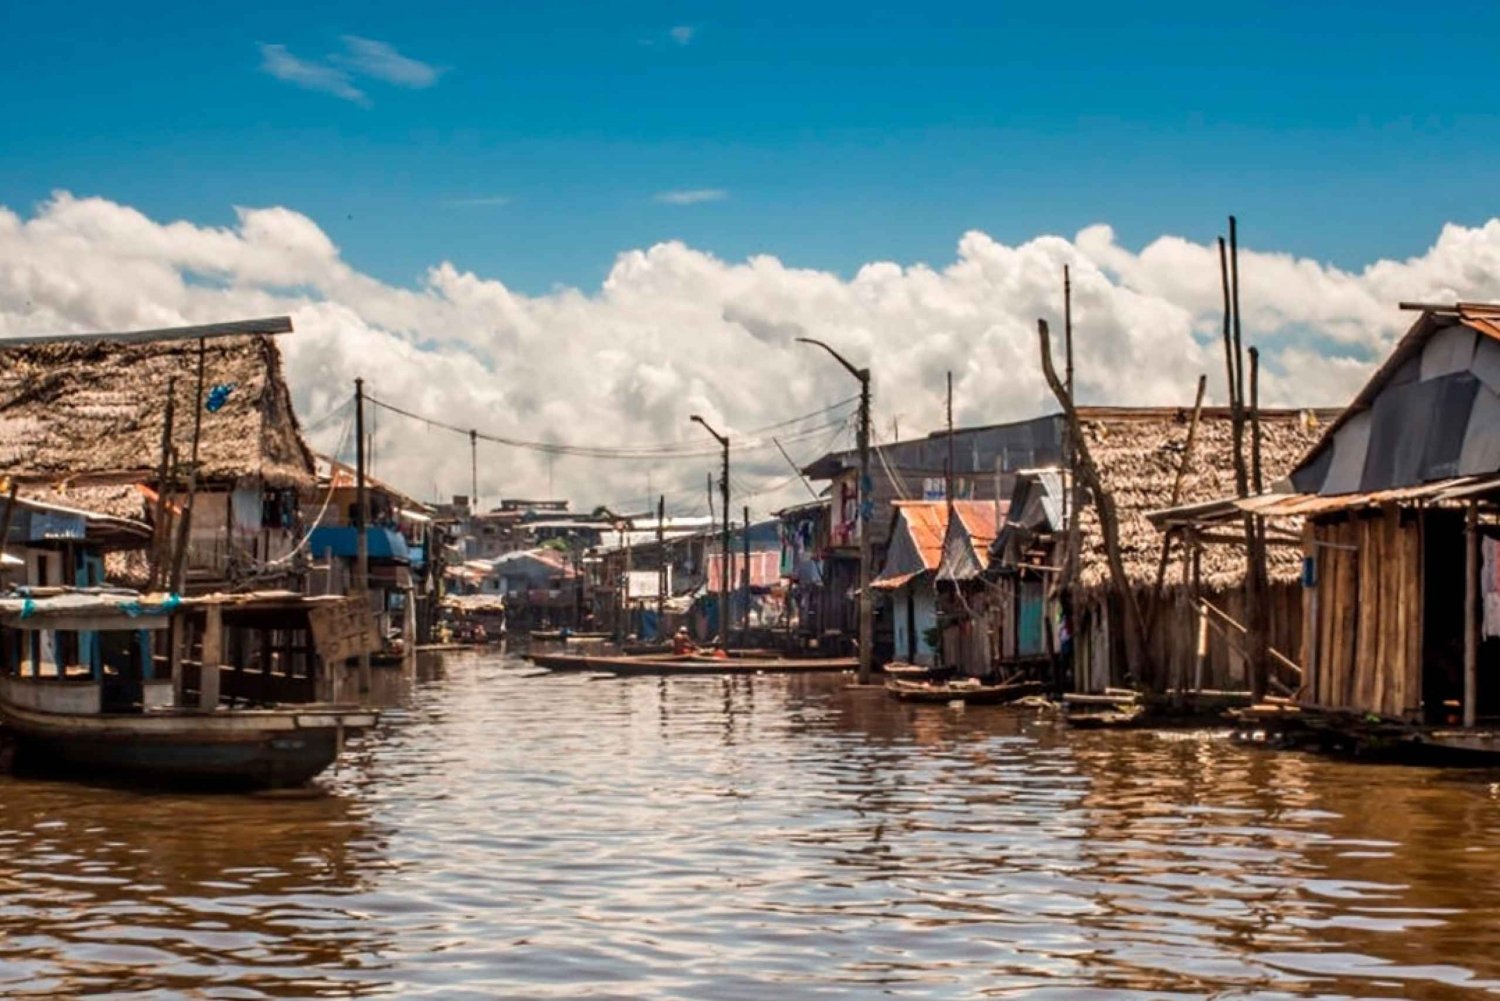 Iquitos: Belen Market and Venice Loretana Guided Tour